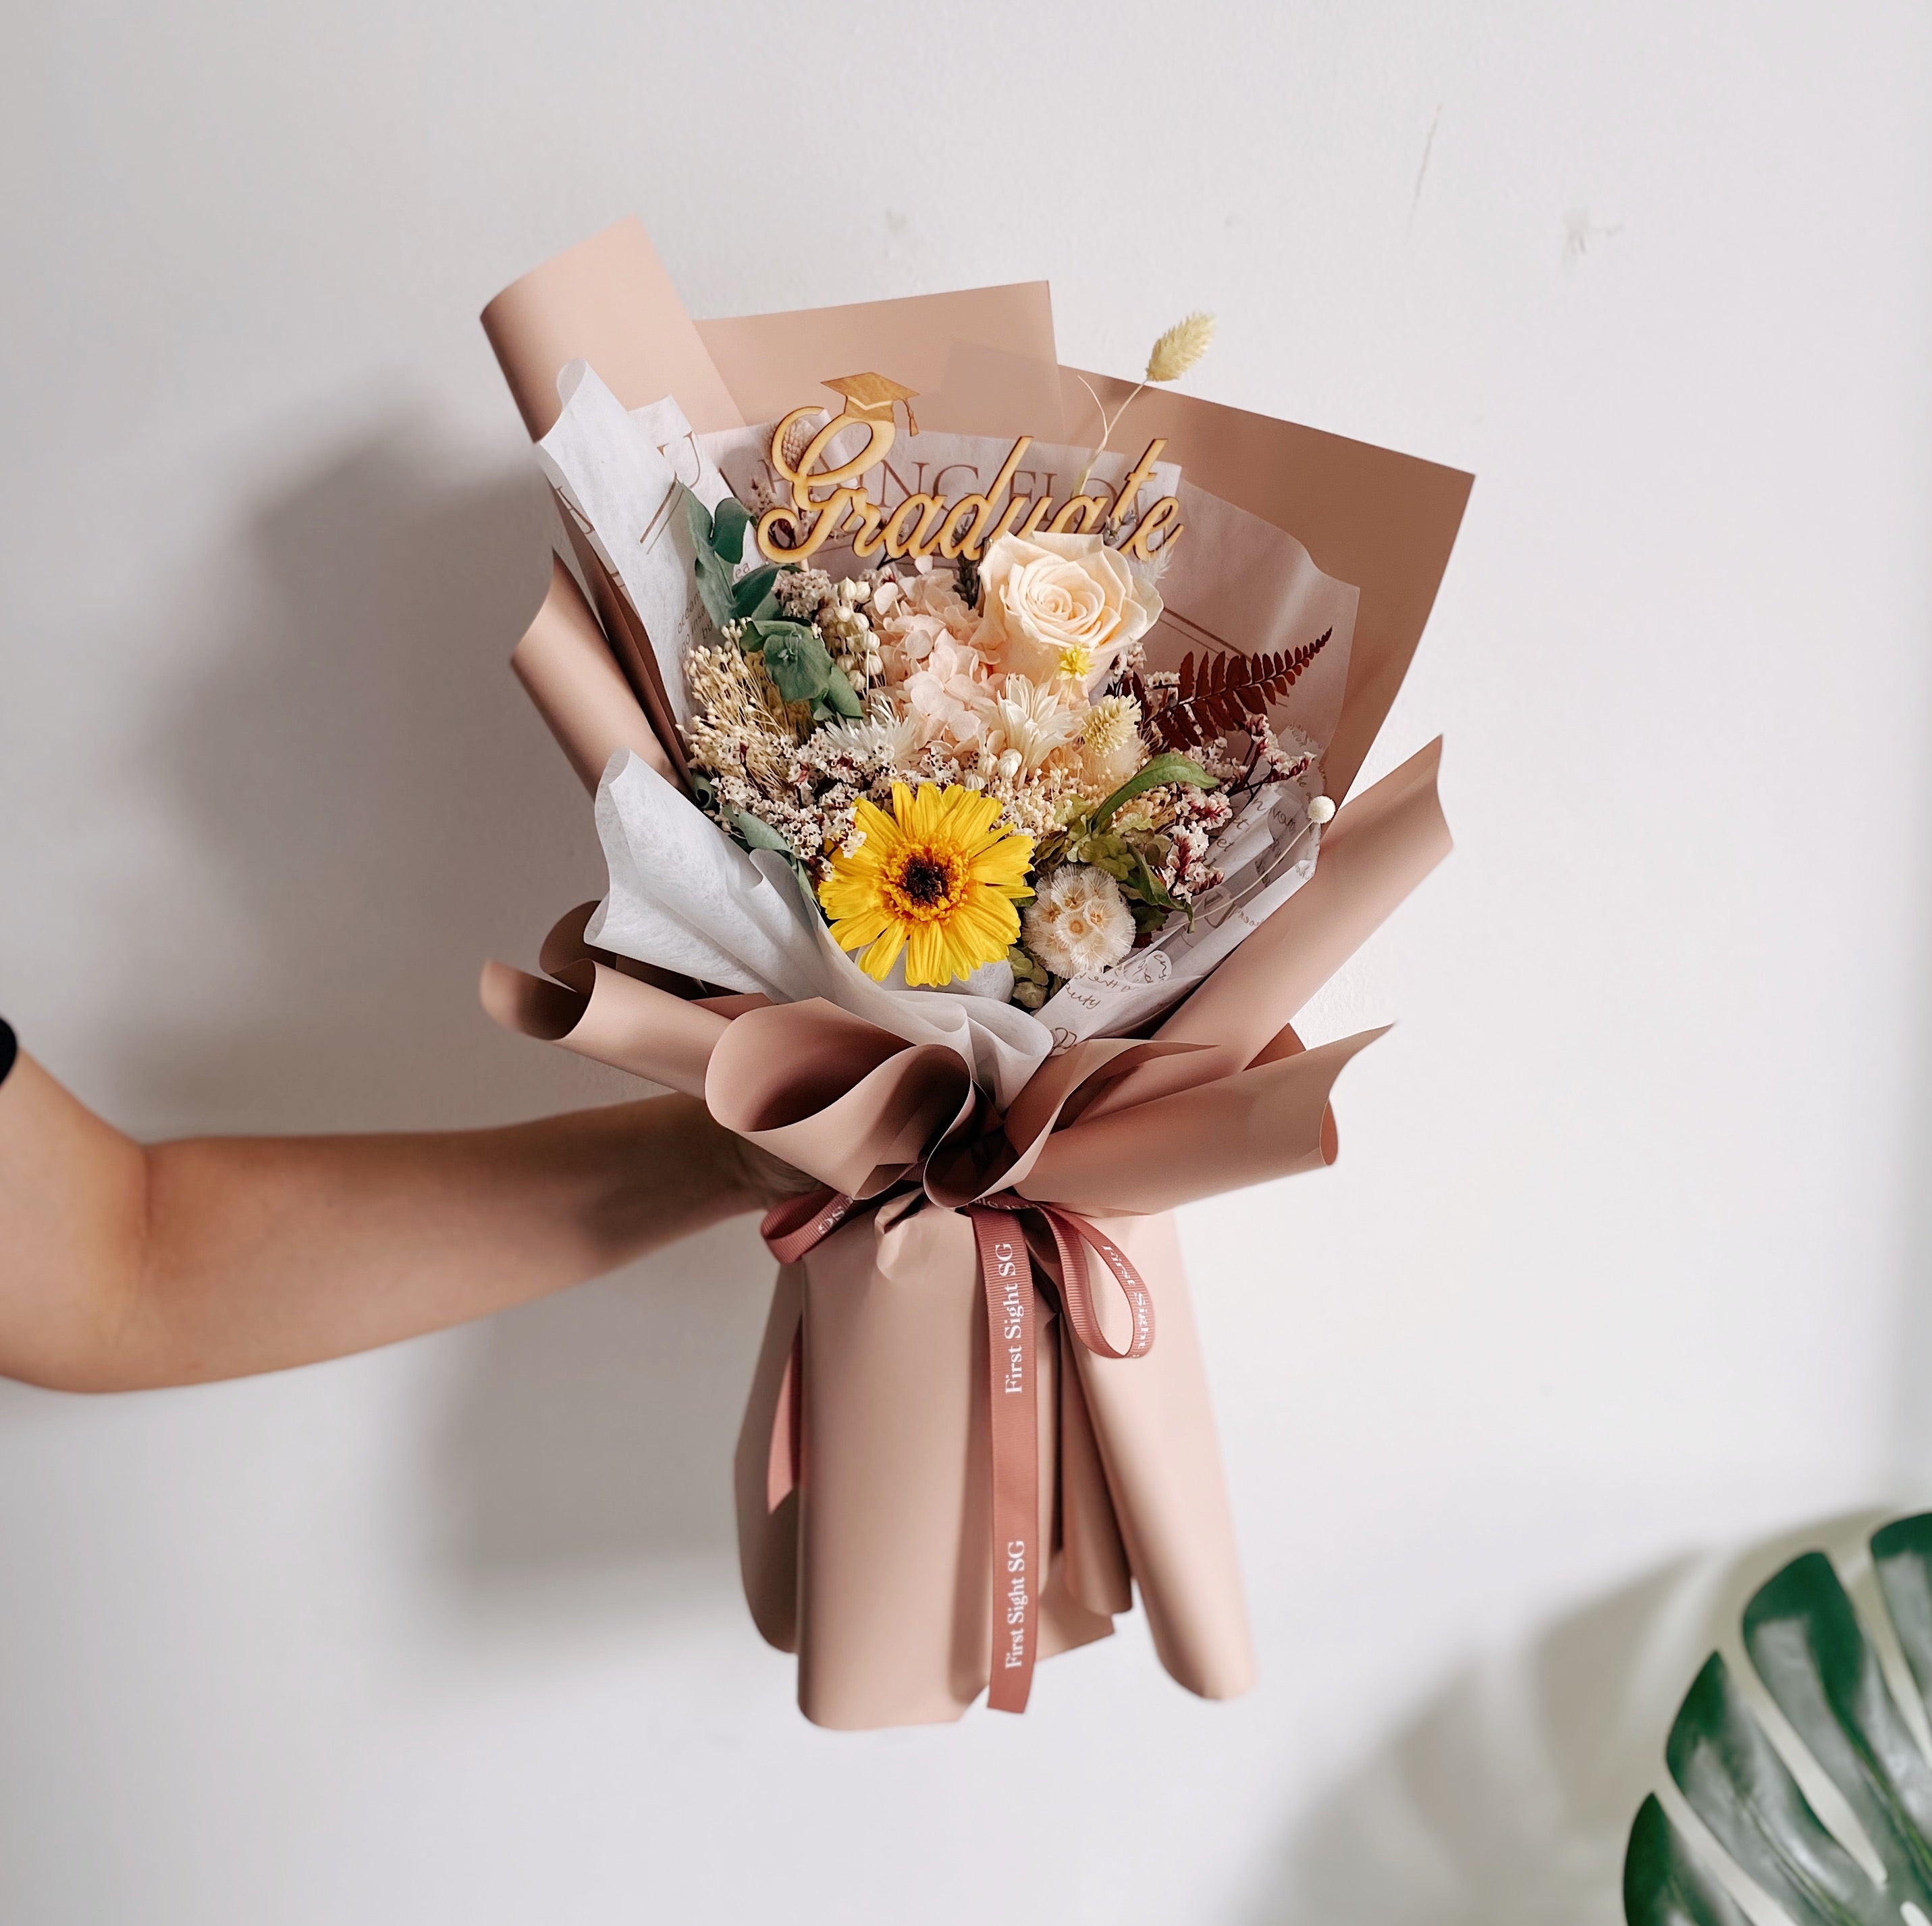 Graduation Flowers Bouquet Ideas For Men